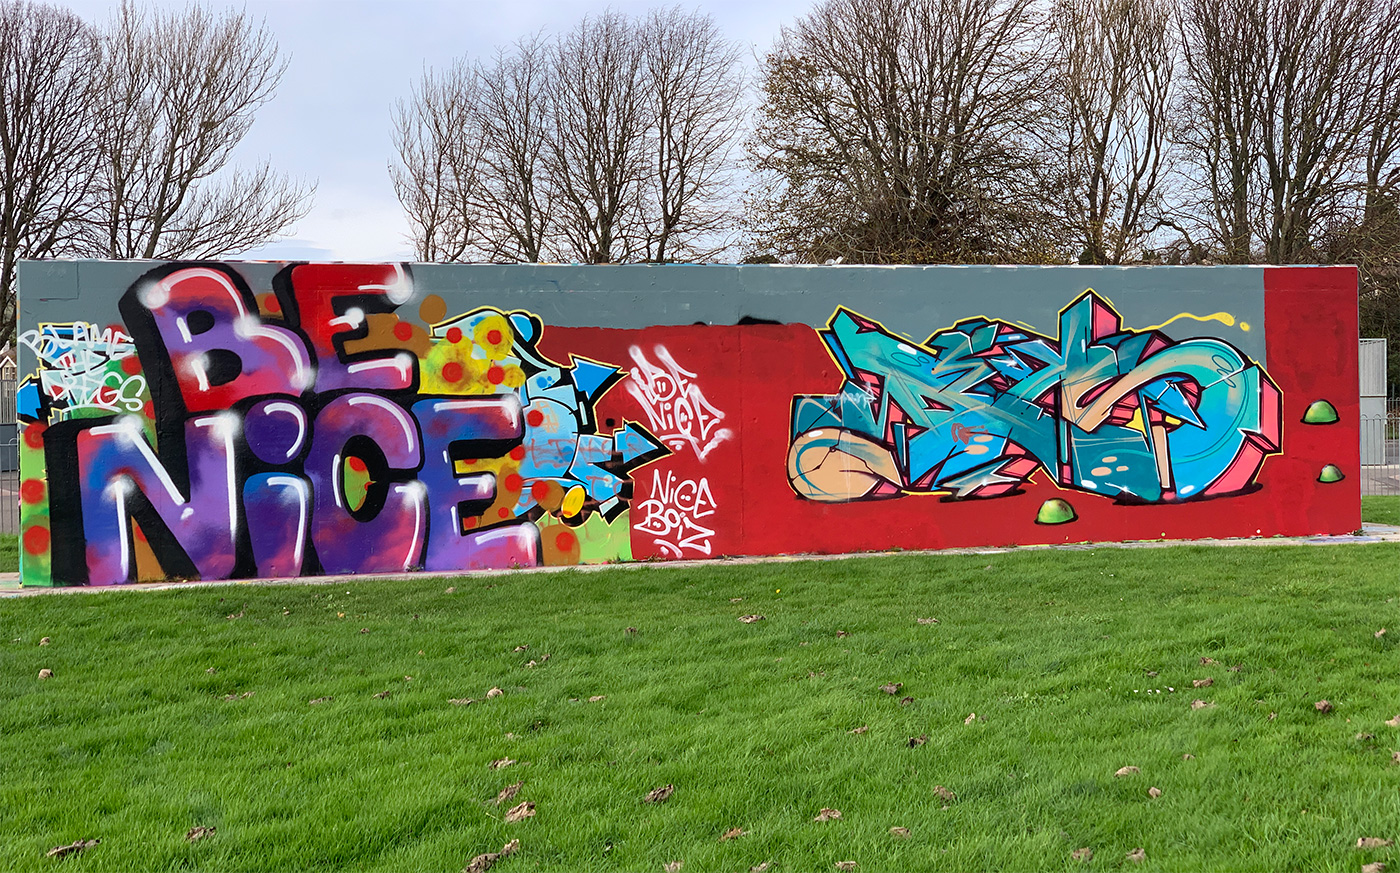 The Swanage Graffiti Wall